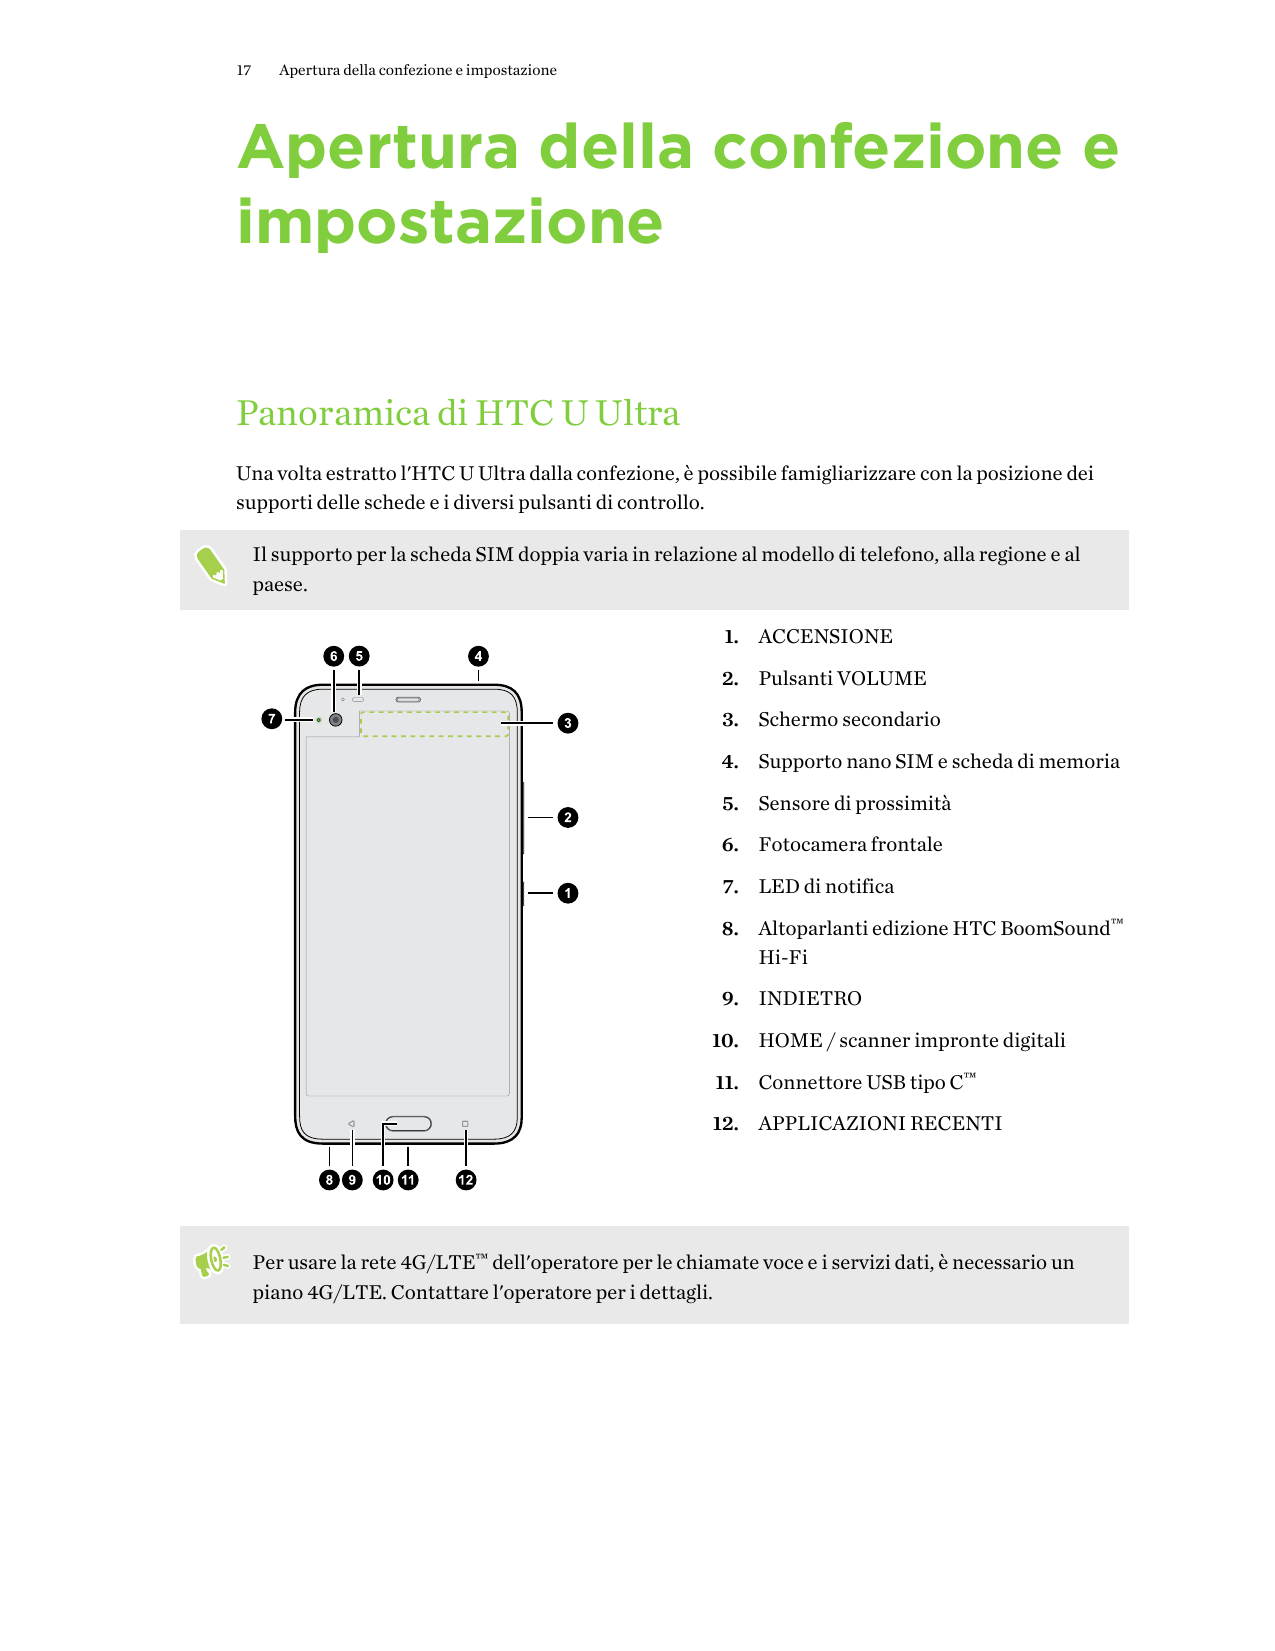 17Apertura della confezione e impostazioneApertura della confezione eimpostazionePanoramica di HTC U UltraUna volta estratto l'H